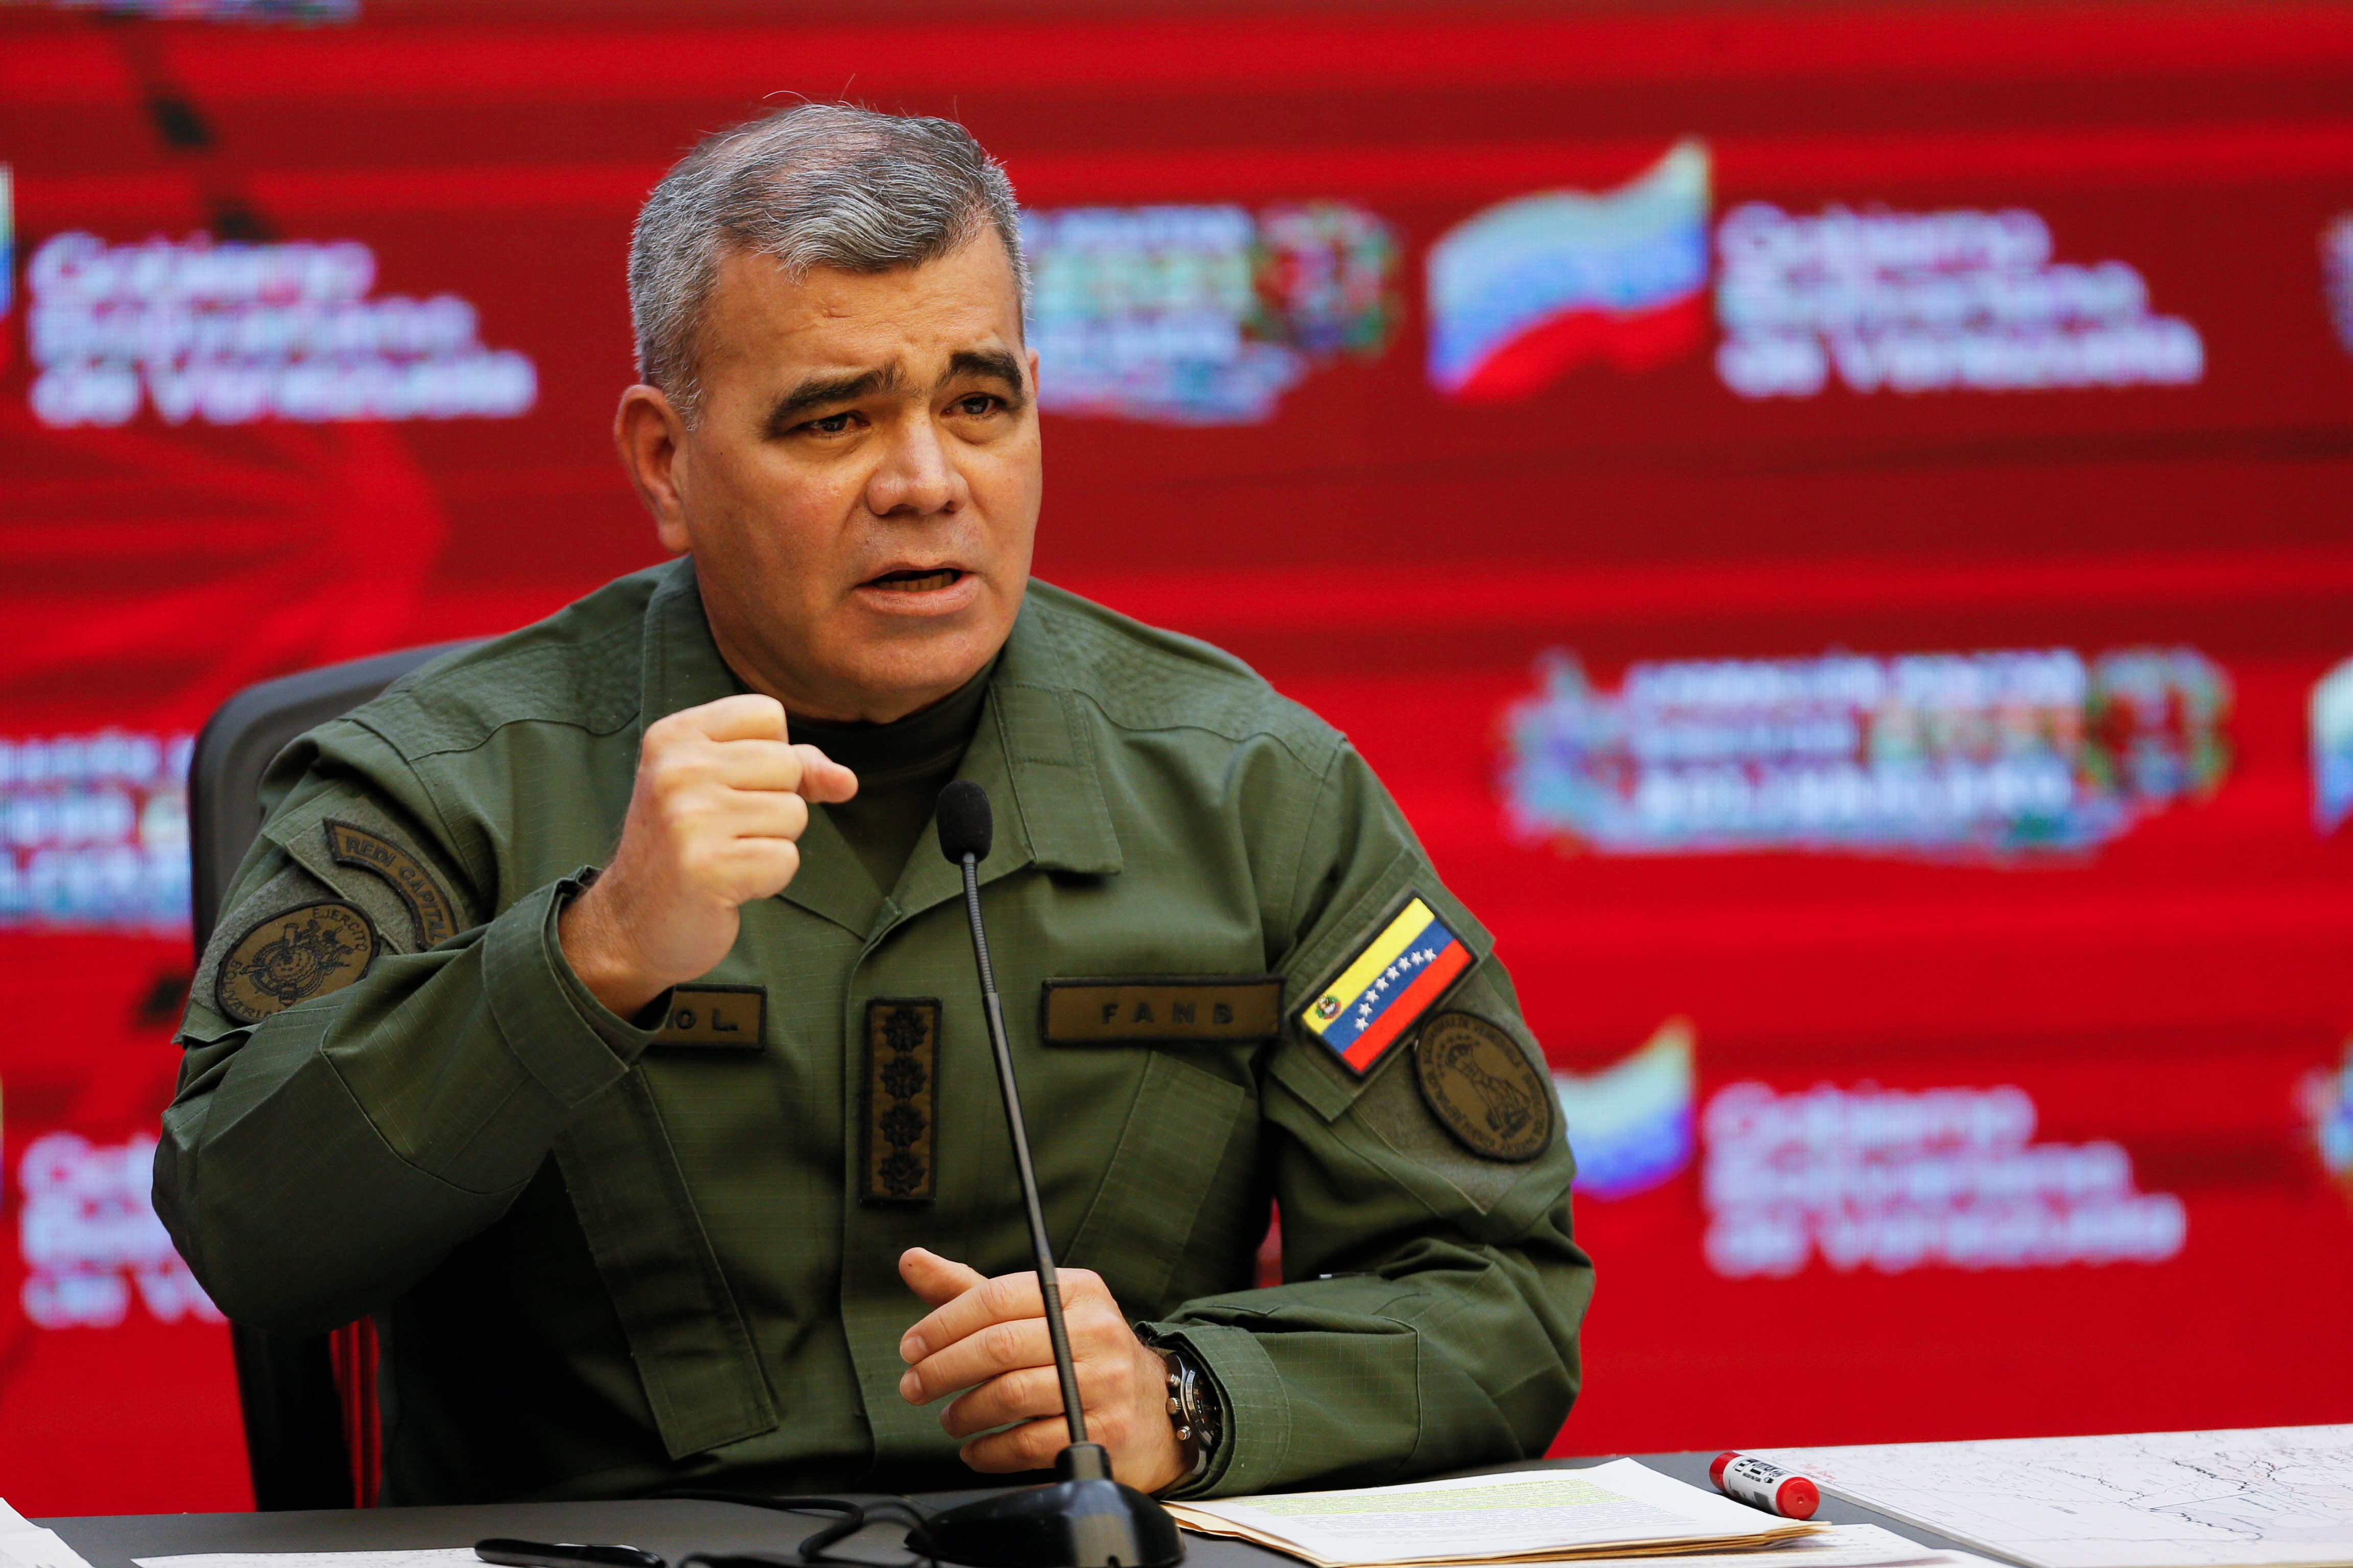 Vladimir Padrino López, jefe del Ejército de la dictadura de Nicolás Maduro, apoyó la propuesta de diálogo de Juan Guaidó